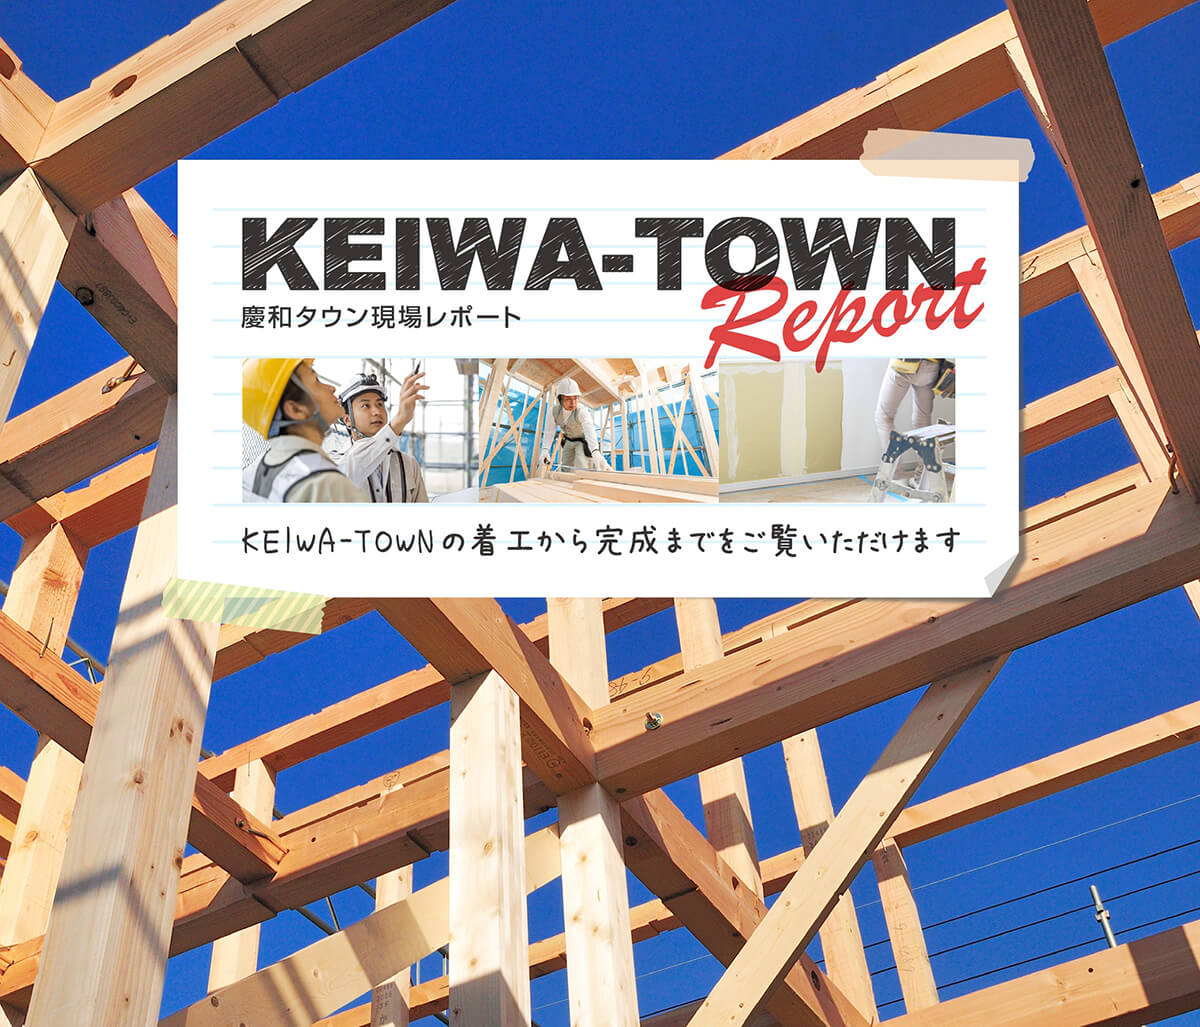 KEIWA TOWN REPORT